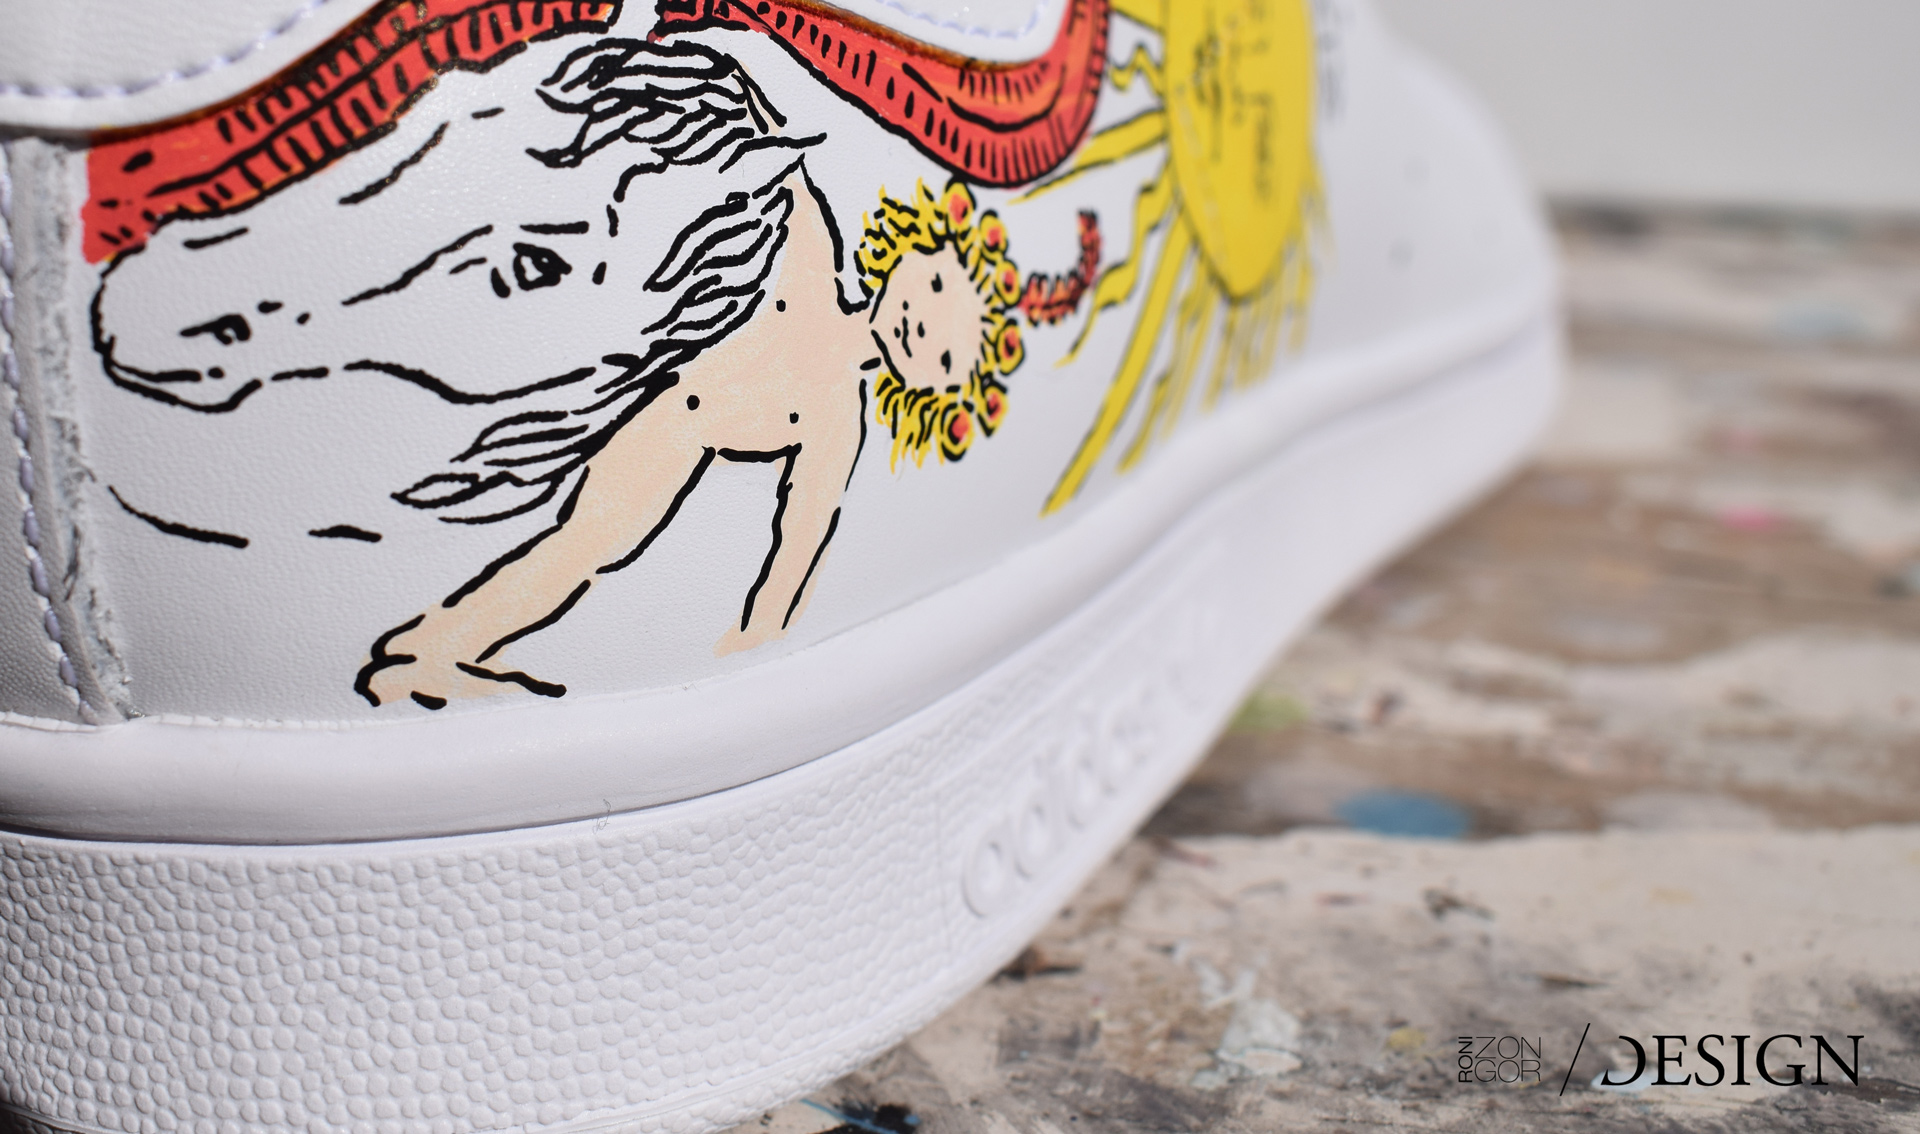 Roni Zongor DESIGN, egyedi kézzel festett Adidas sportcipő, egyedi grafika